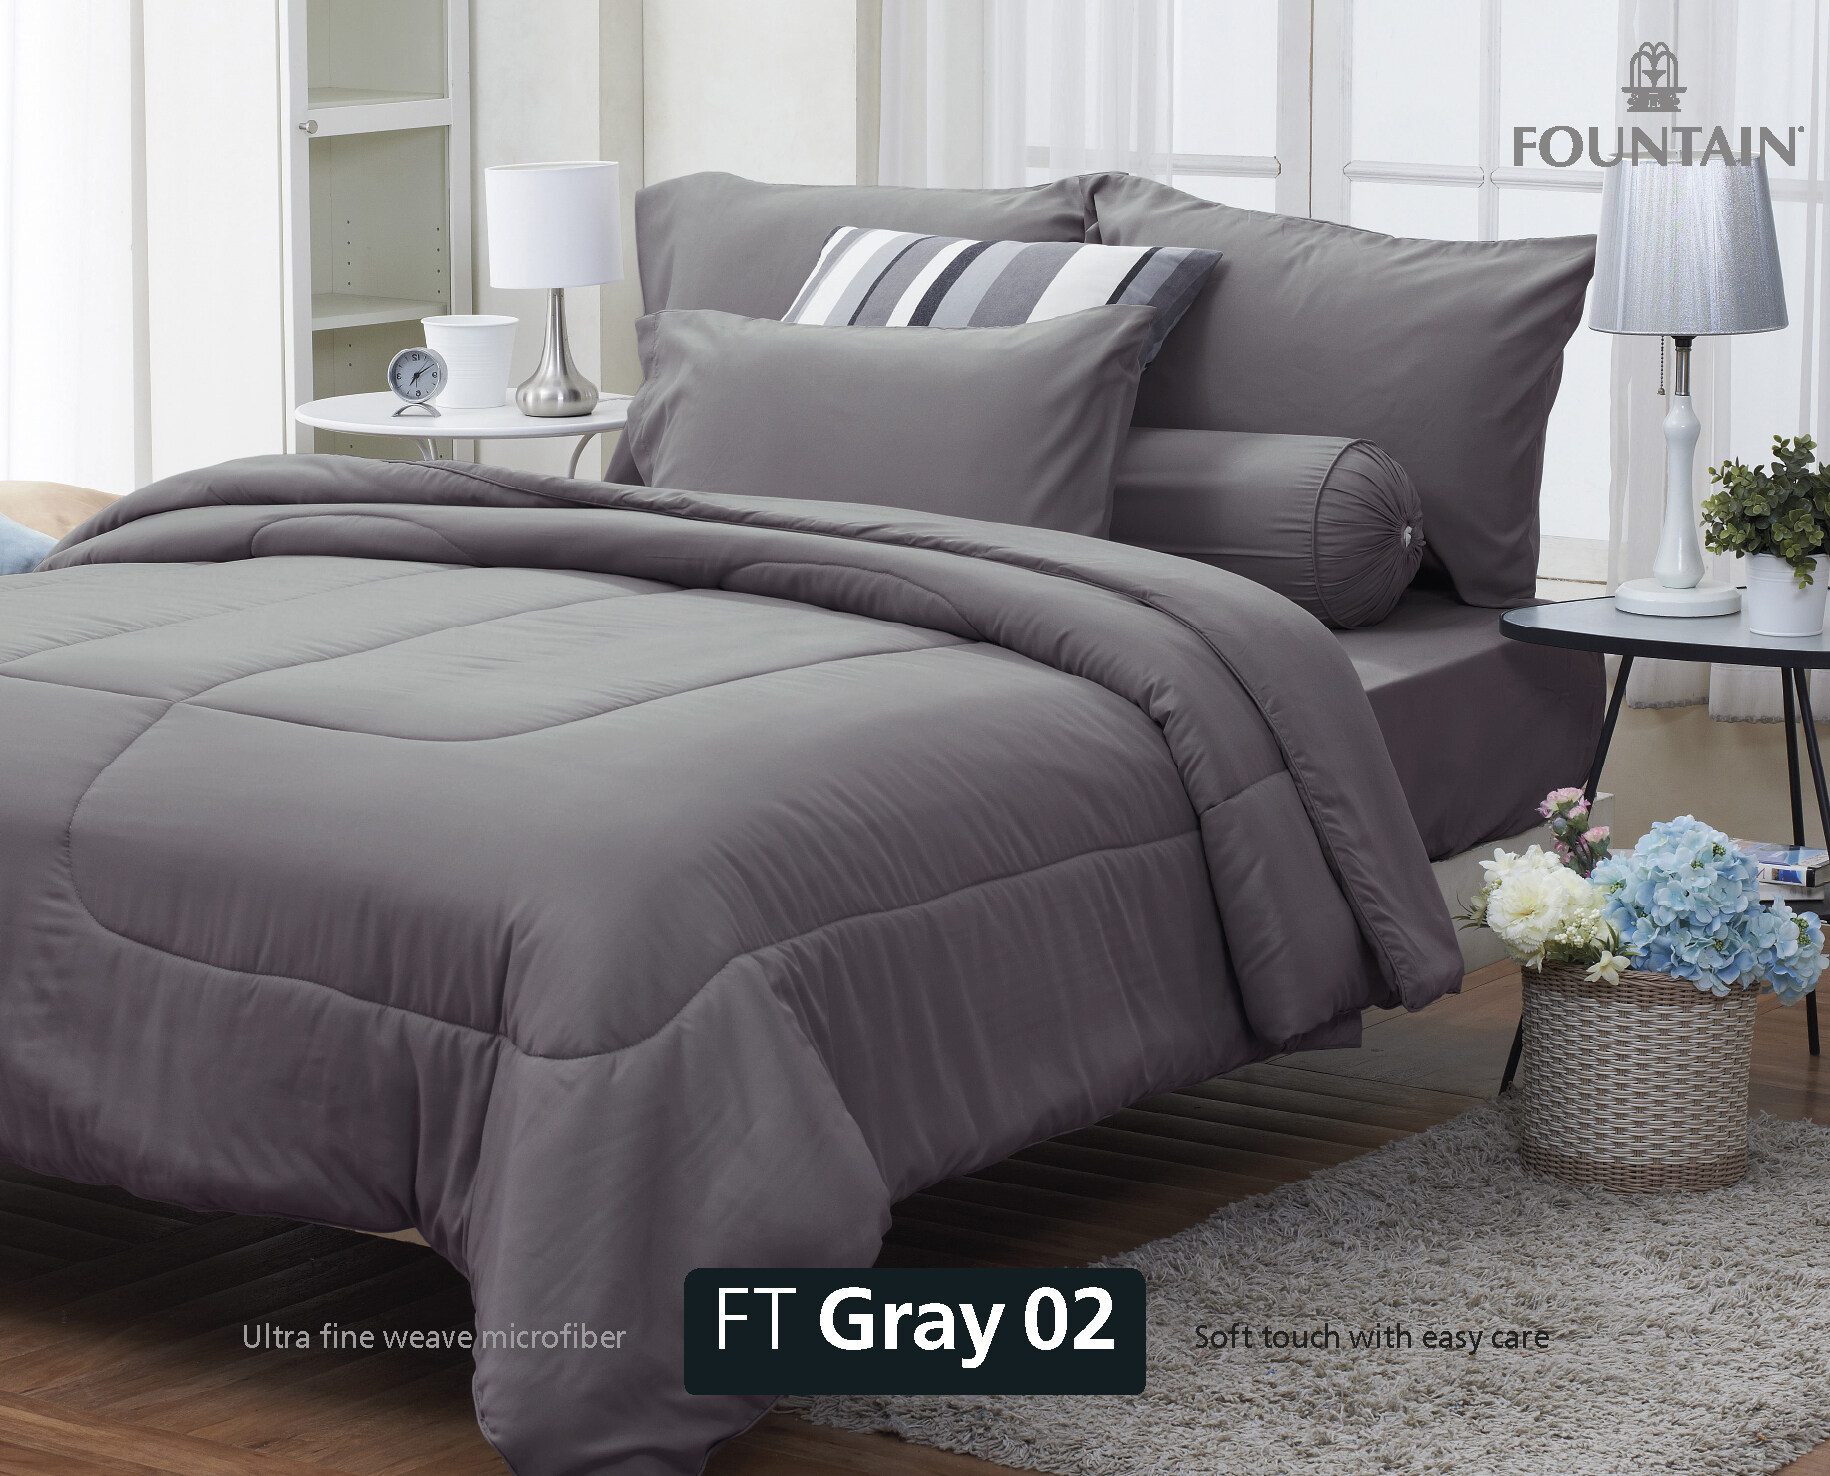 FOUNTAIN ผ้านวม + ชุดผ้าปู ผ้าปู ที่นอน แท้ 100% FTC สีพื้น เขียว Green Gray เทา ขนาด 3.5 5 6ฟุต ชุดเครื่องนอน ผ้านวม ผ้าปูที่นอน wonderful bedding  สี → Gray2ขนาดสินค้า 5 ฟุต